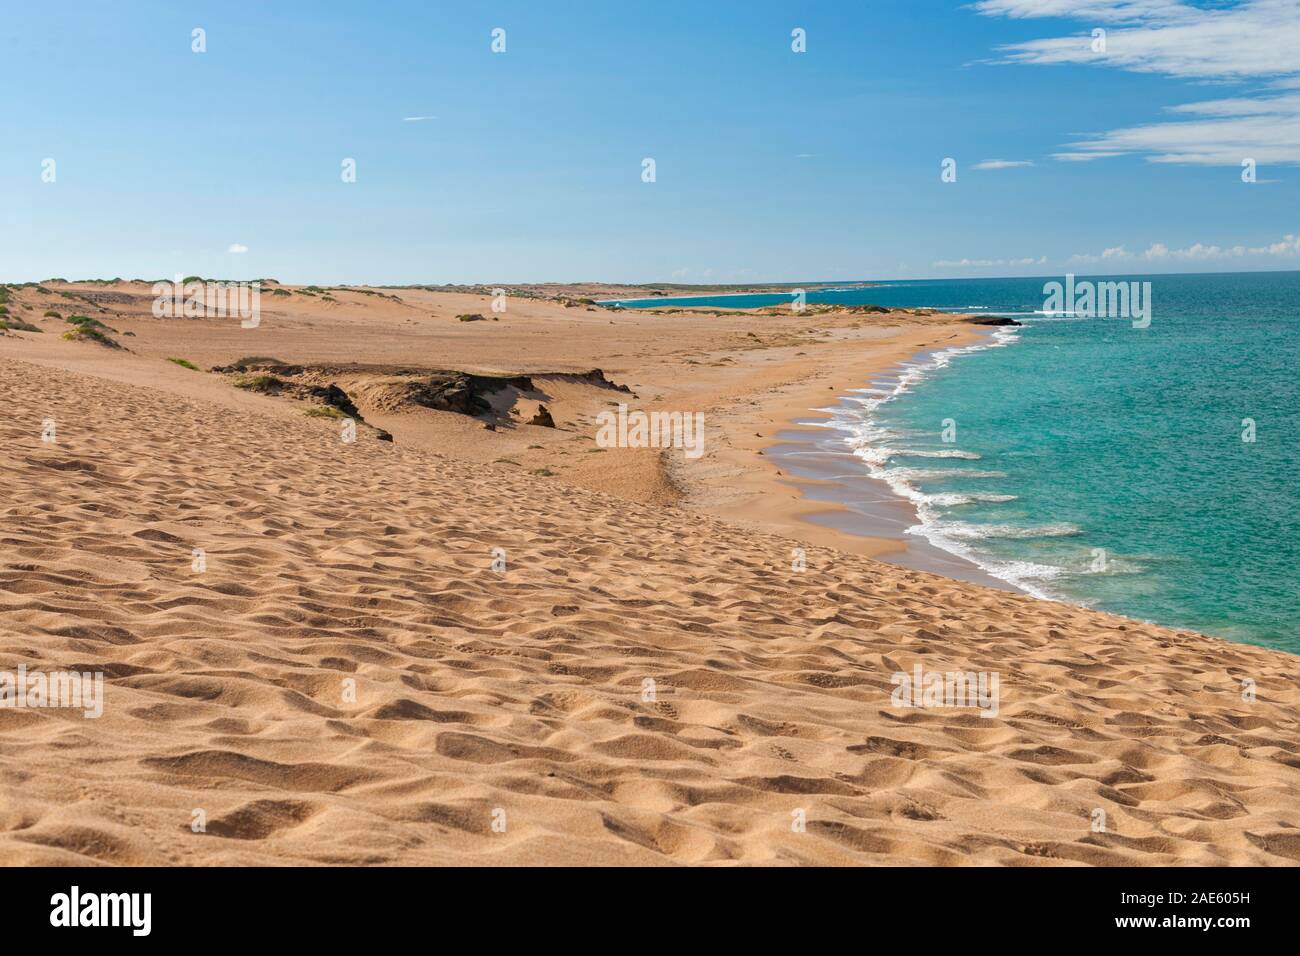 Les dunes côtières de Taroa dans la péninsule Guajira du nord de la Colombie. Banque D'Images